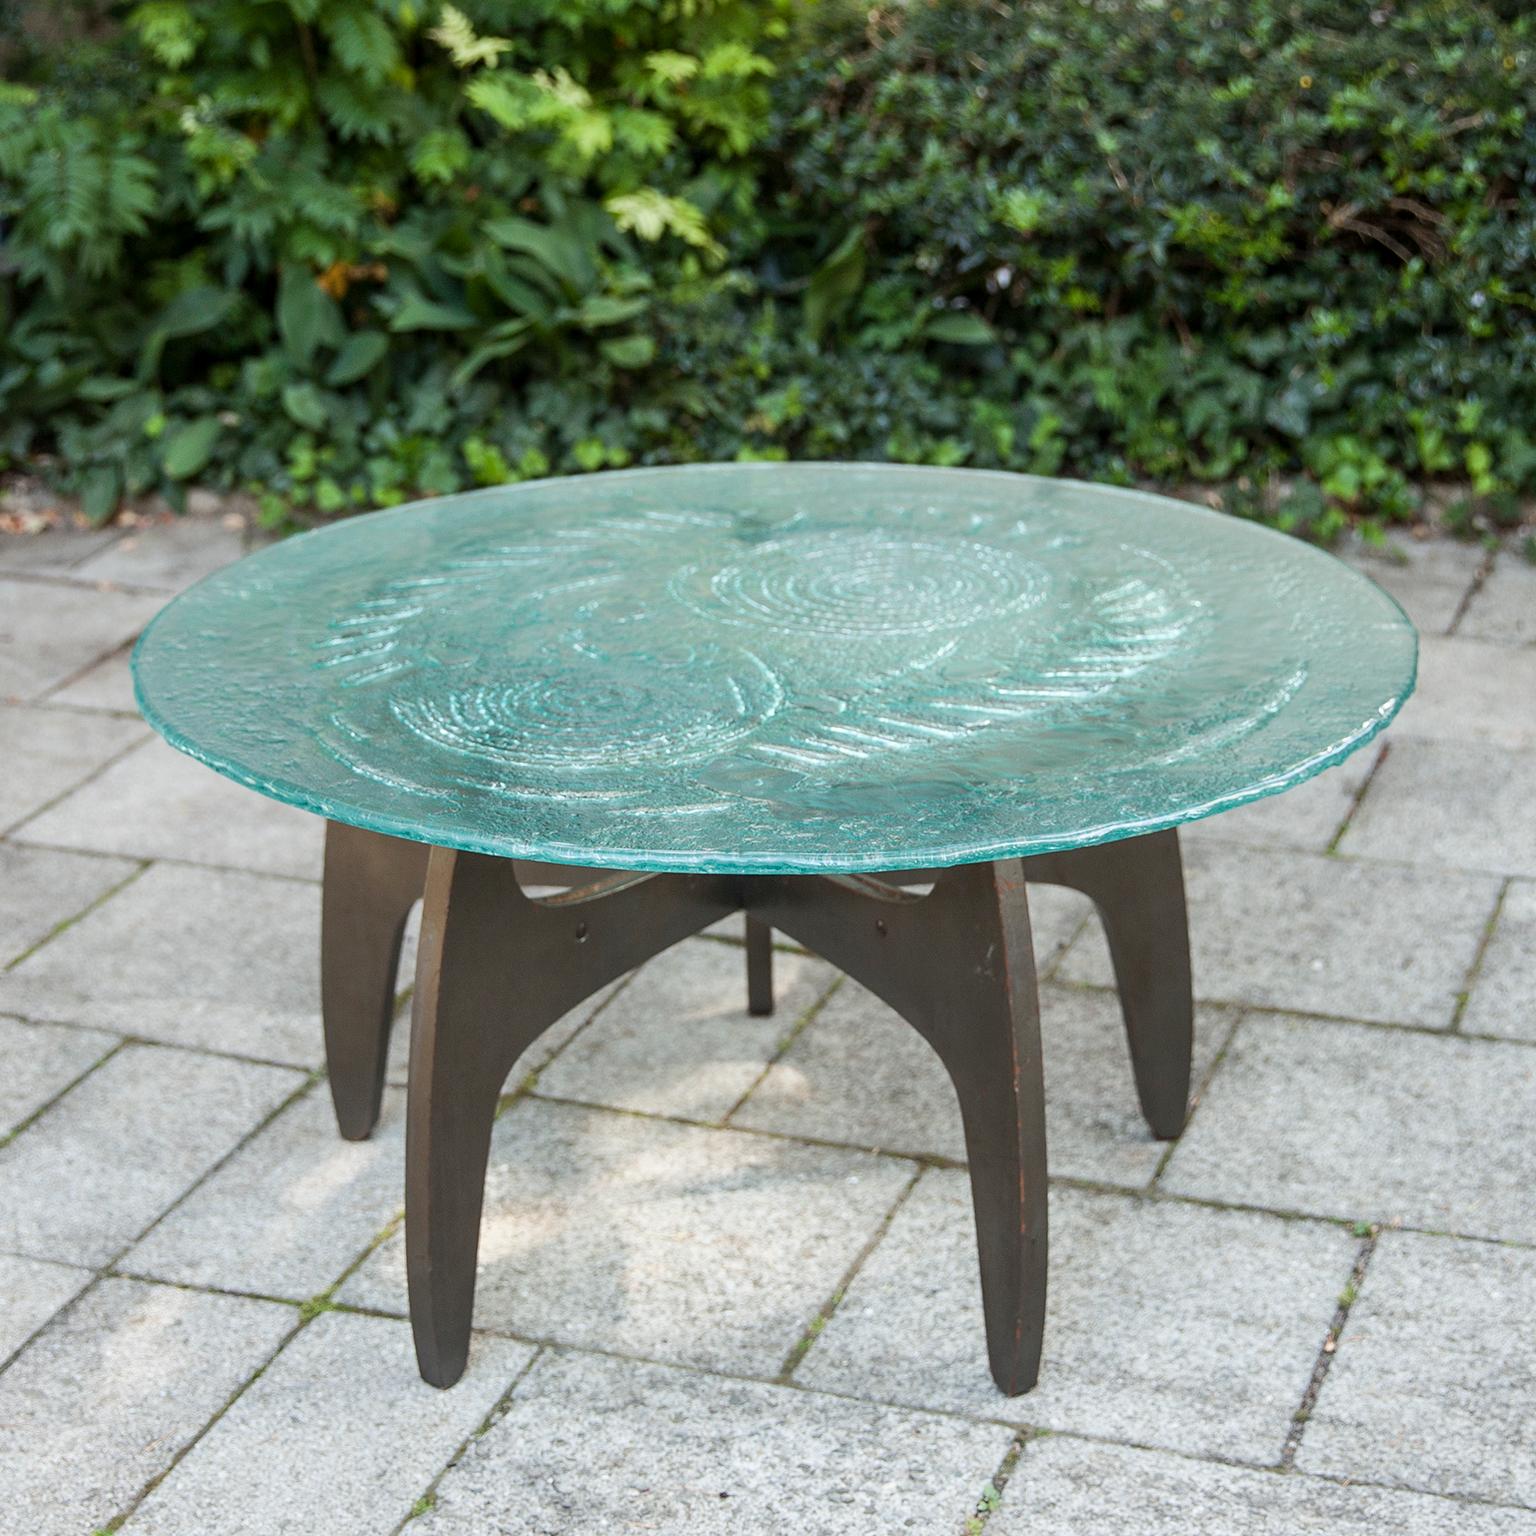 Merveilleuse table basse de travail avec plateau en verre, basée sur une base en bois à 5 étoiles conçue par l'artiste allemand Heinz Lilienthal, dans les années 1960.

 